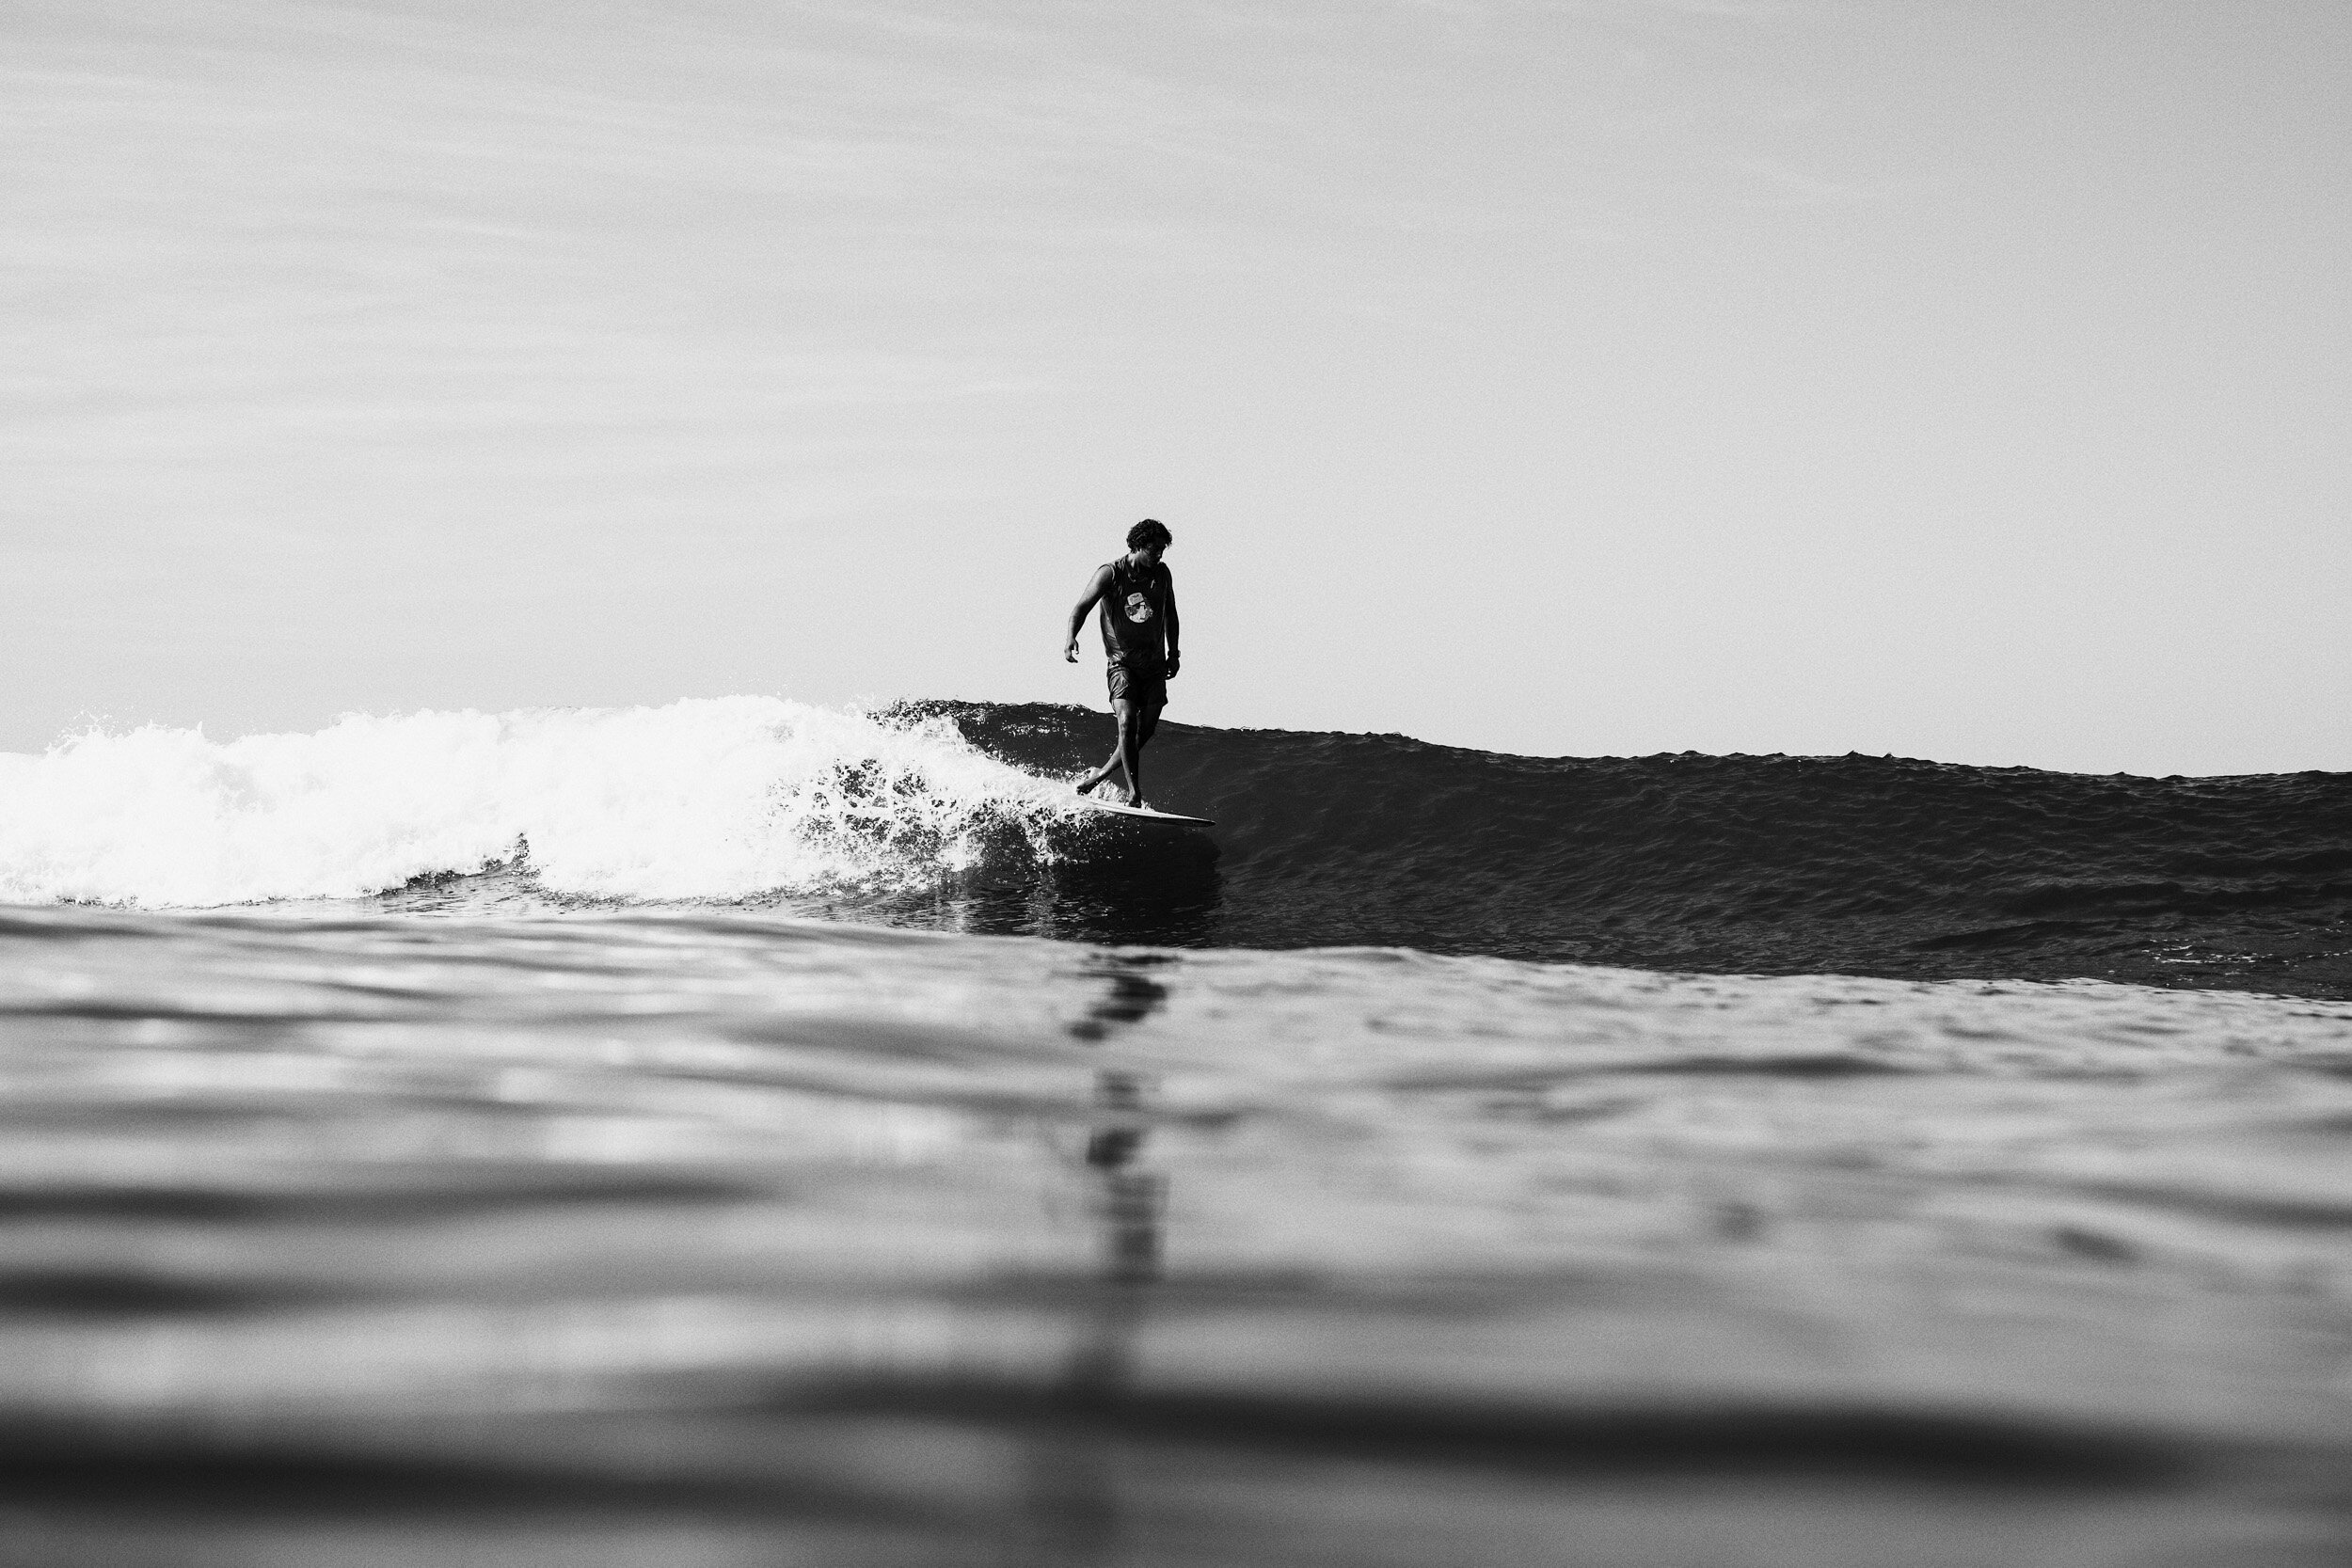 la-saladita-mexico-surf-longboard-fotografia-heiko-bothe-1700.jpg